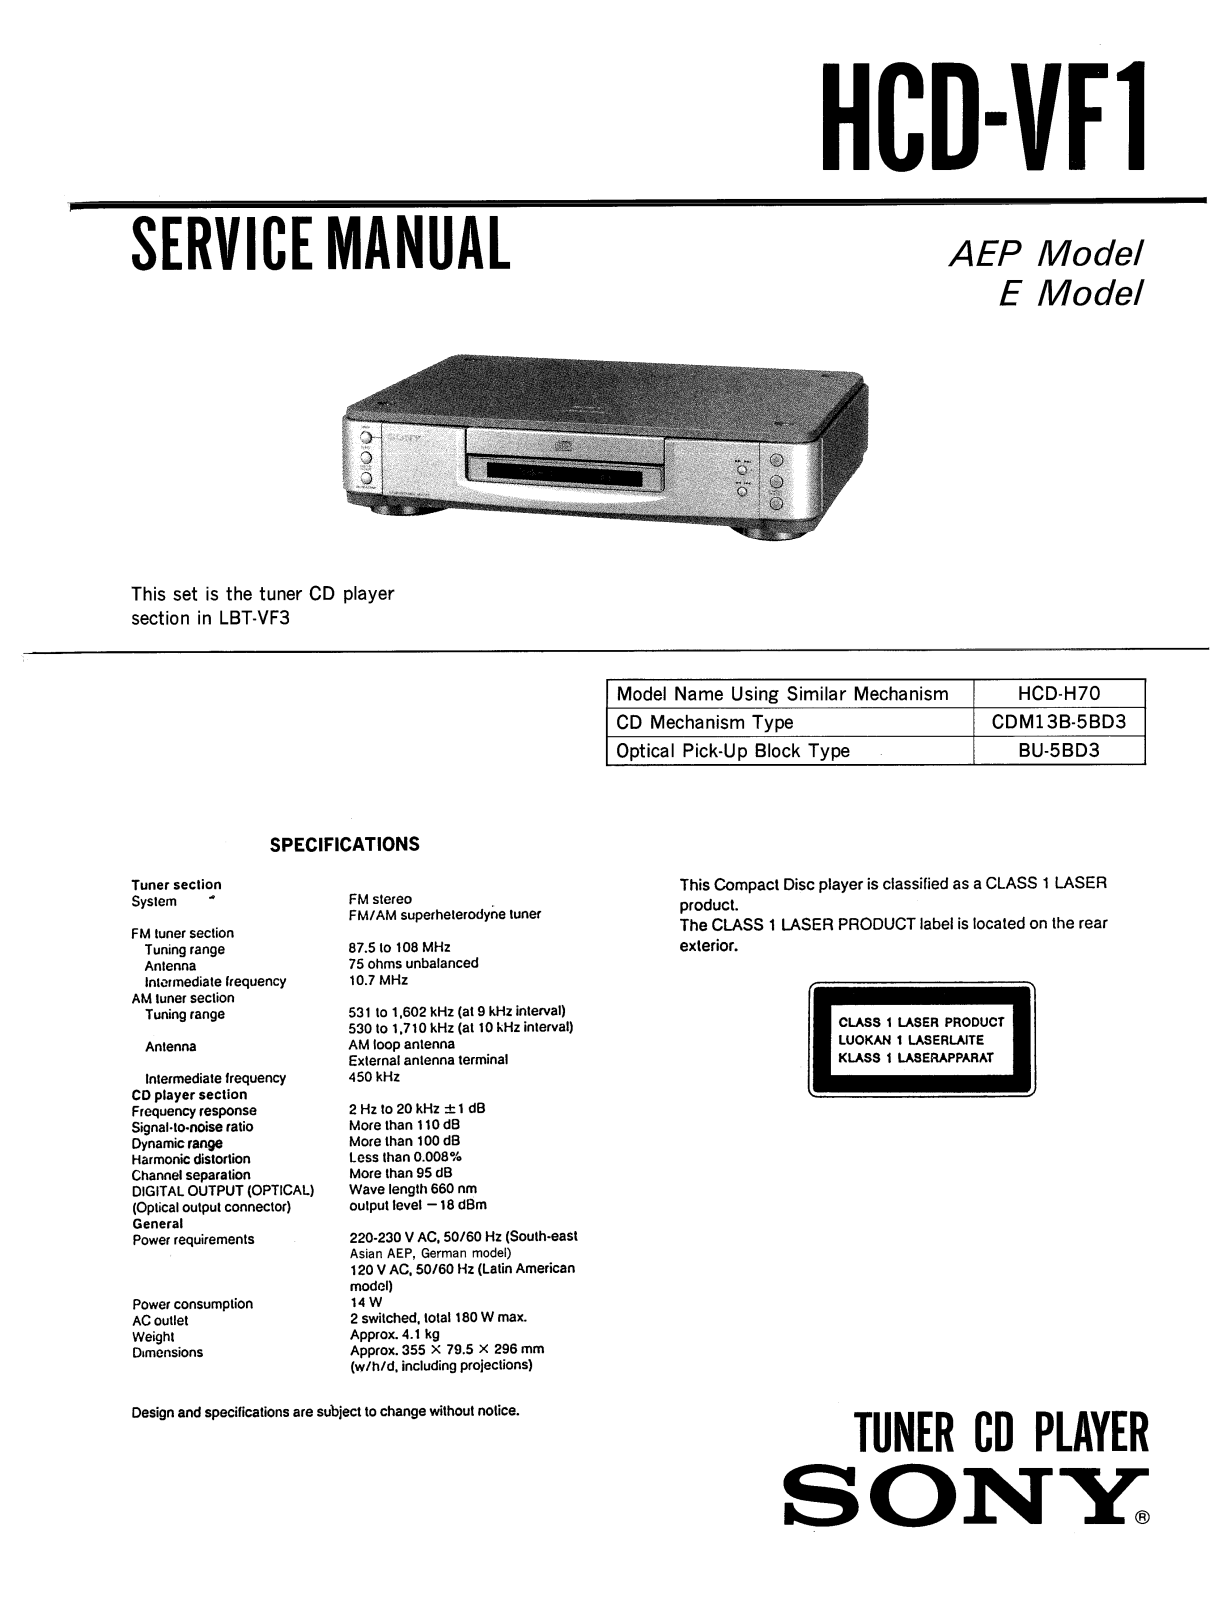 Sony HCDVF-1 Service manual